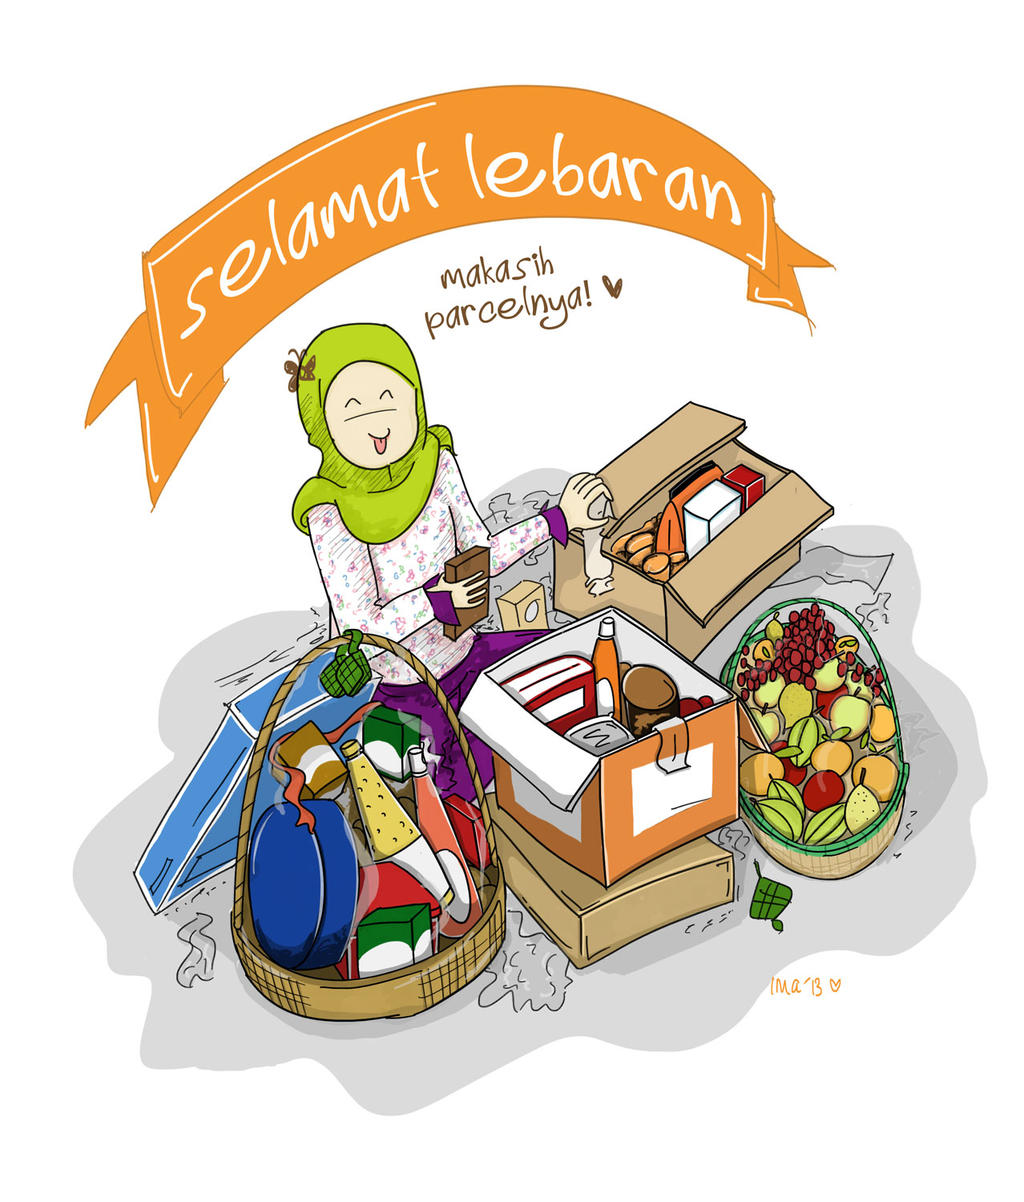 Selamat Lebaran | Happy Ied Mubarak